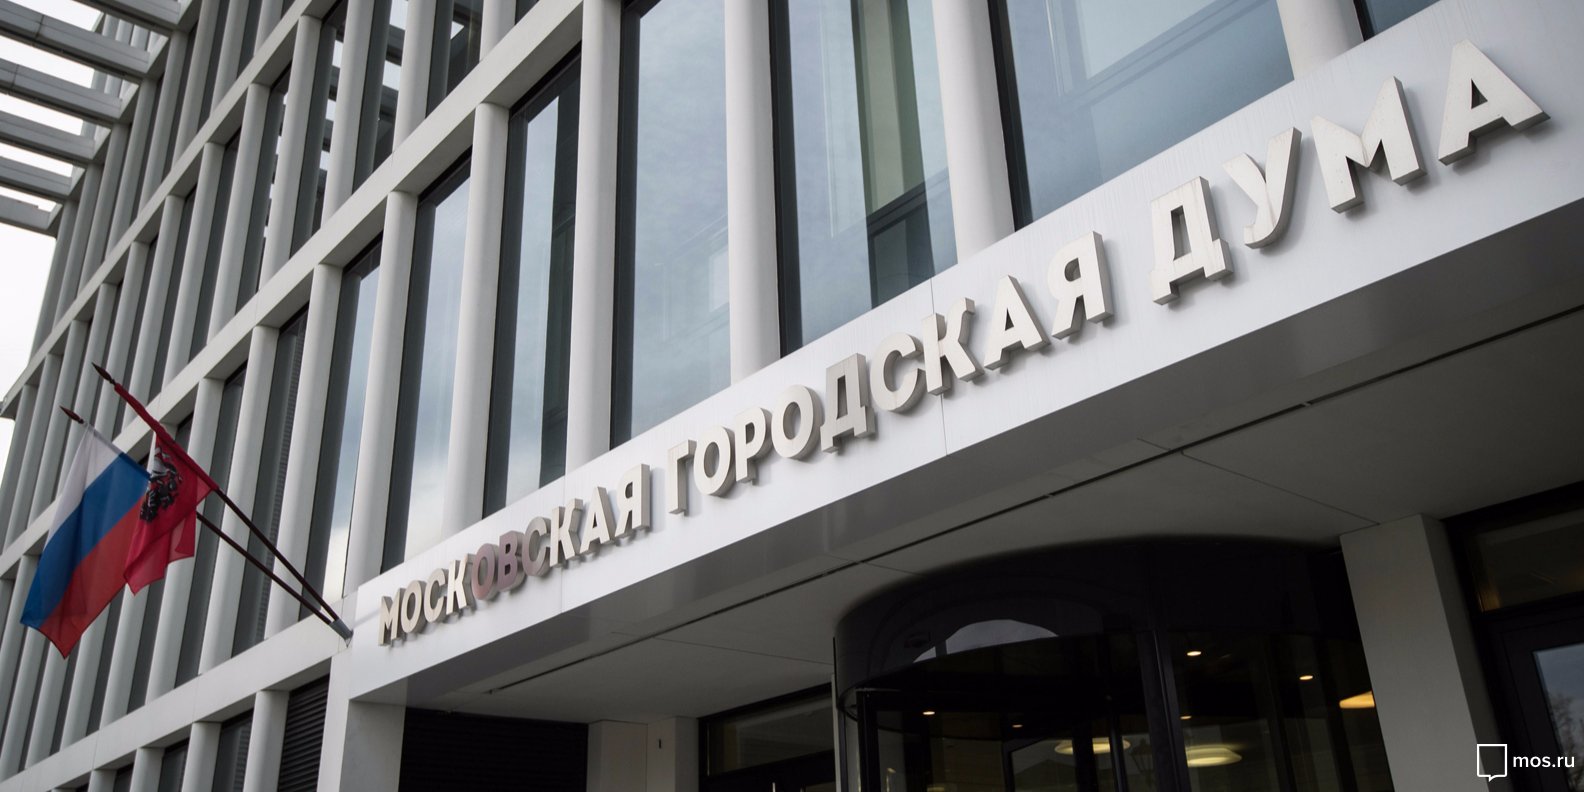 Мосгордума поддержала выбор москвичей назвать площадь у посольства США в честь ДНР. Фото: сайт мэра Москвы